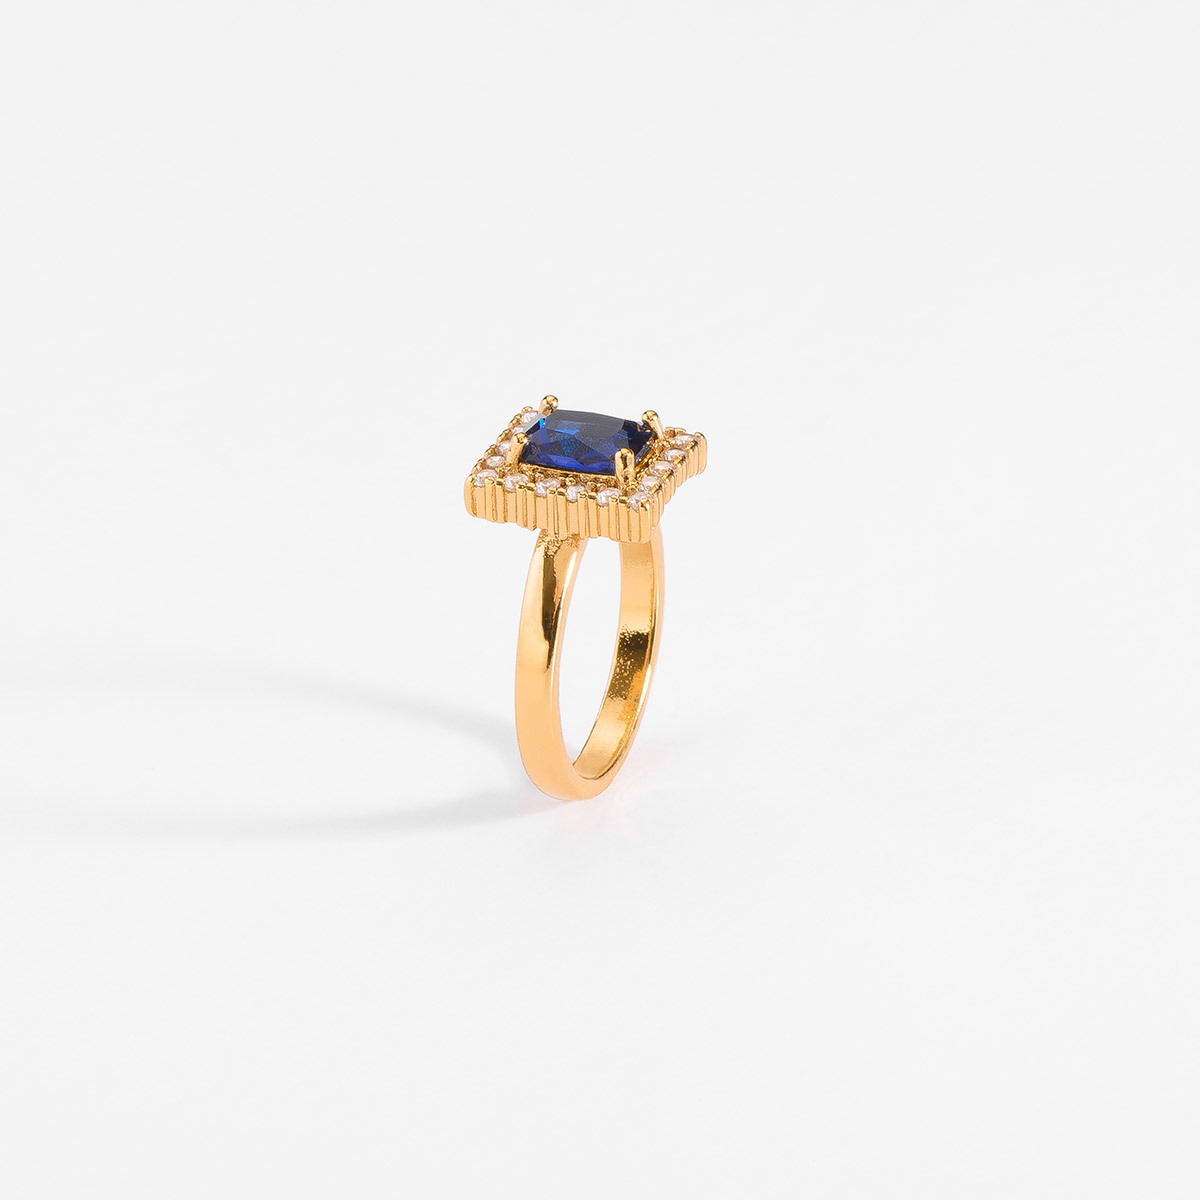 Anillo en baño de oro con piedra diamonice en tono cristal y azul 